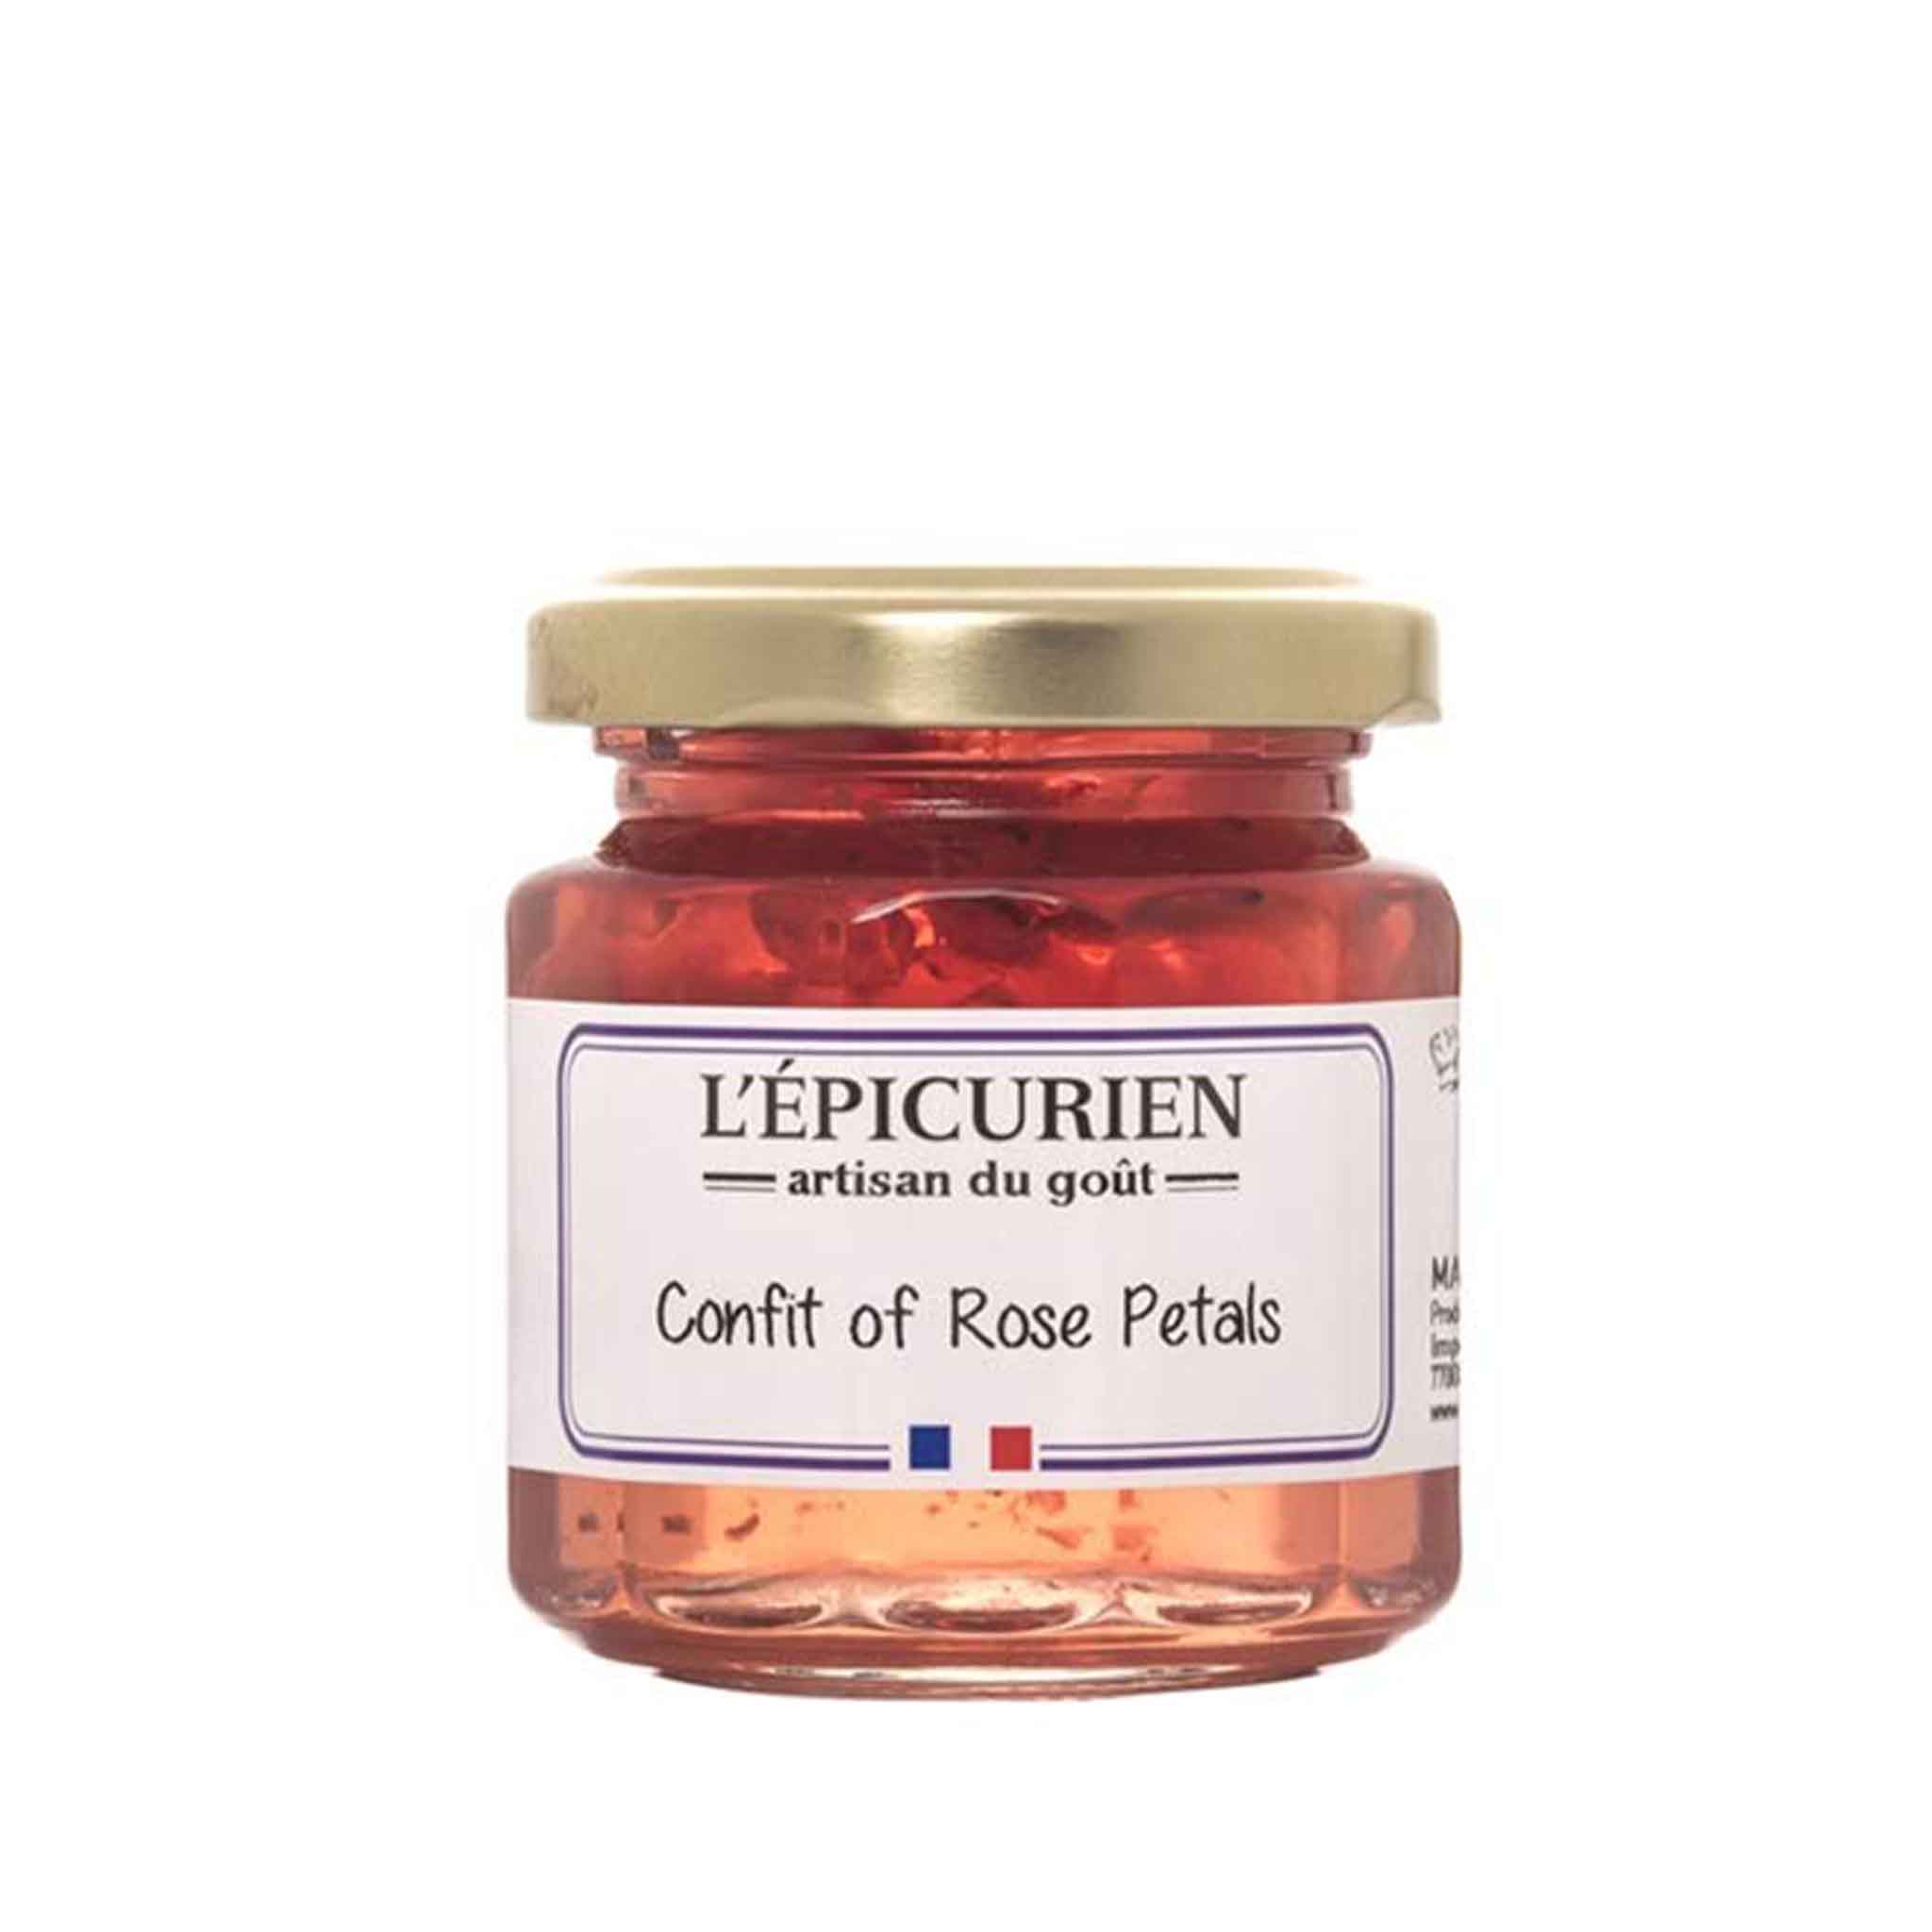 L'EPICURIEN CONFIT OF ROSE PETALS 125g